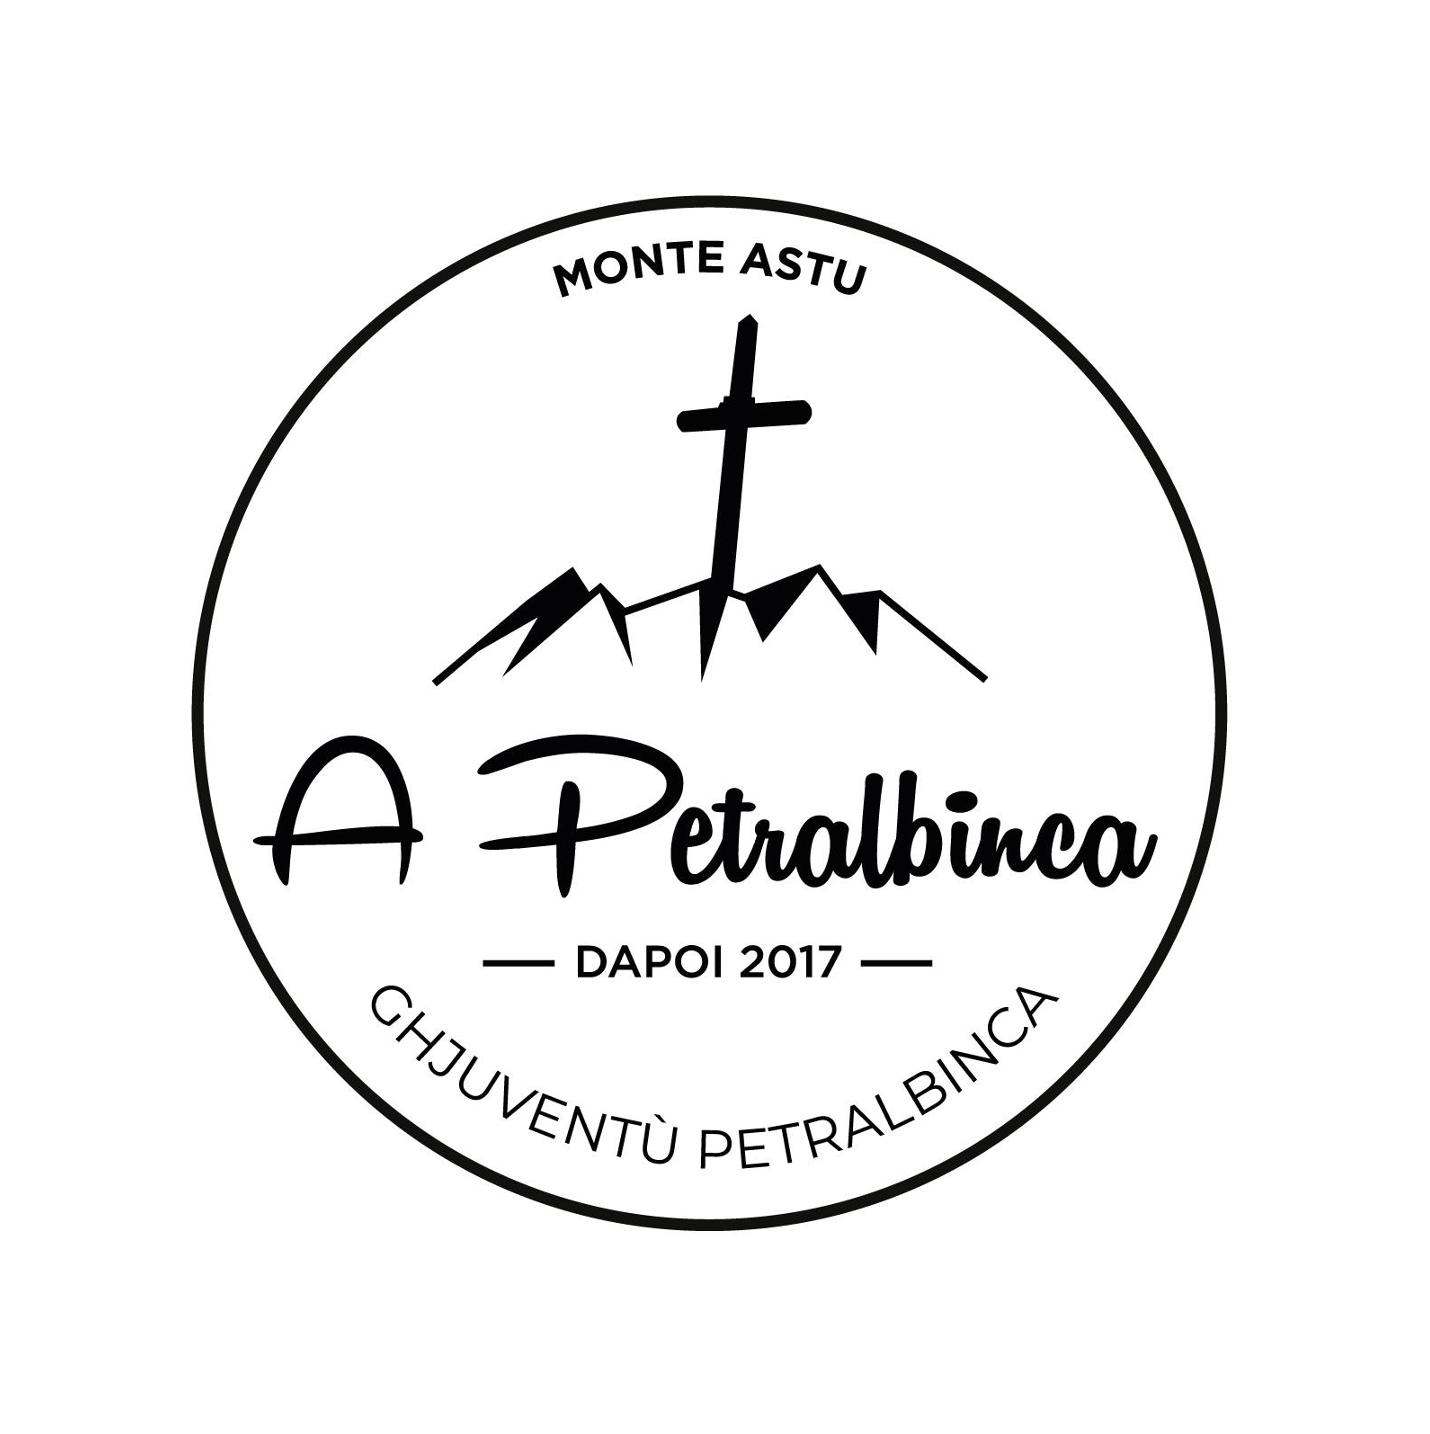 Logo-A-Petralbinca